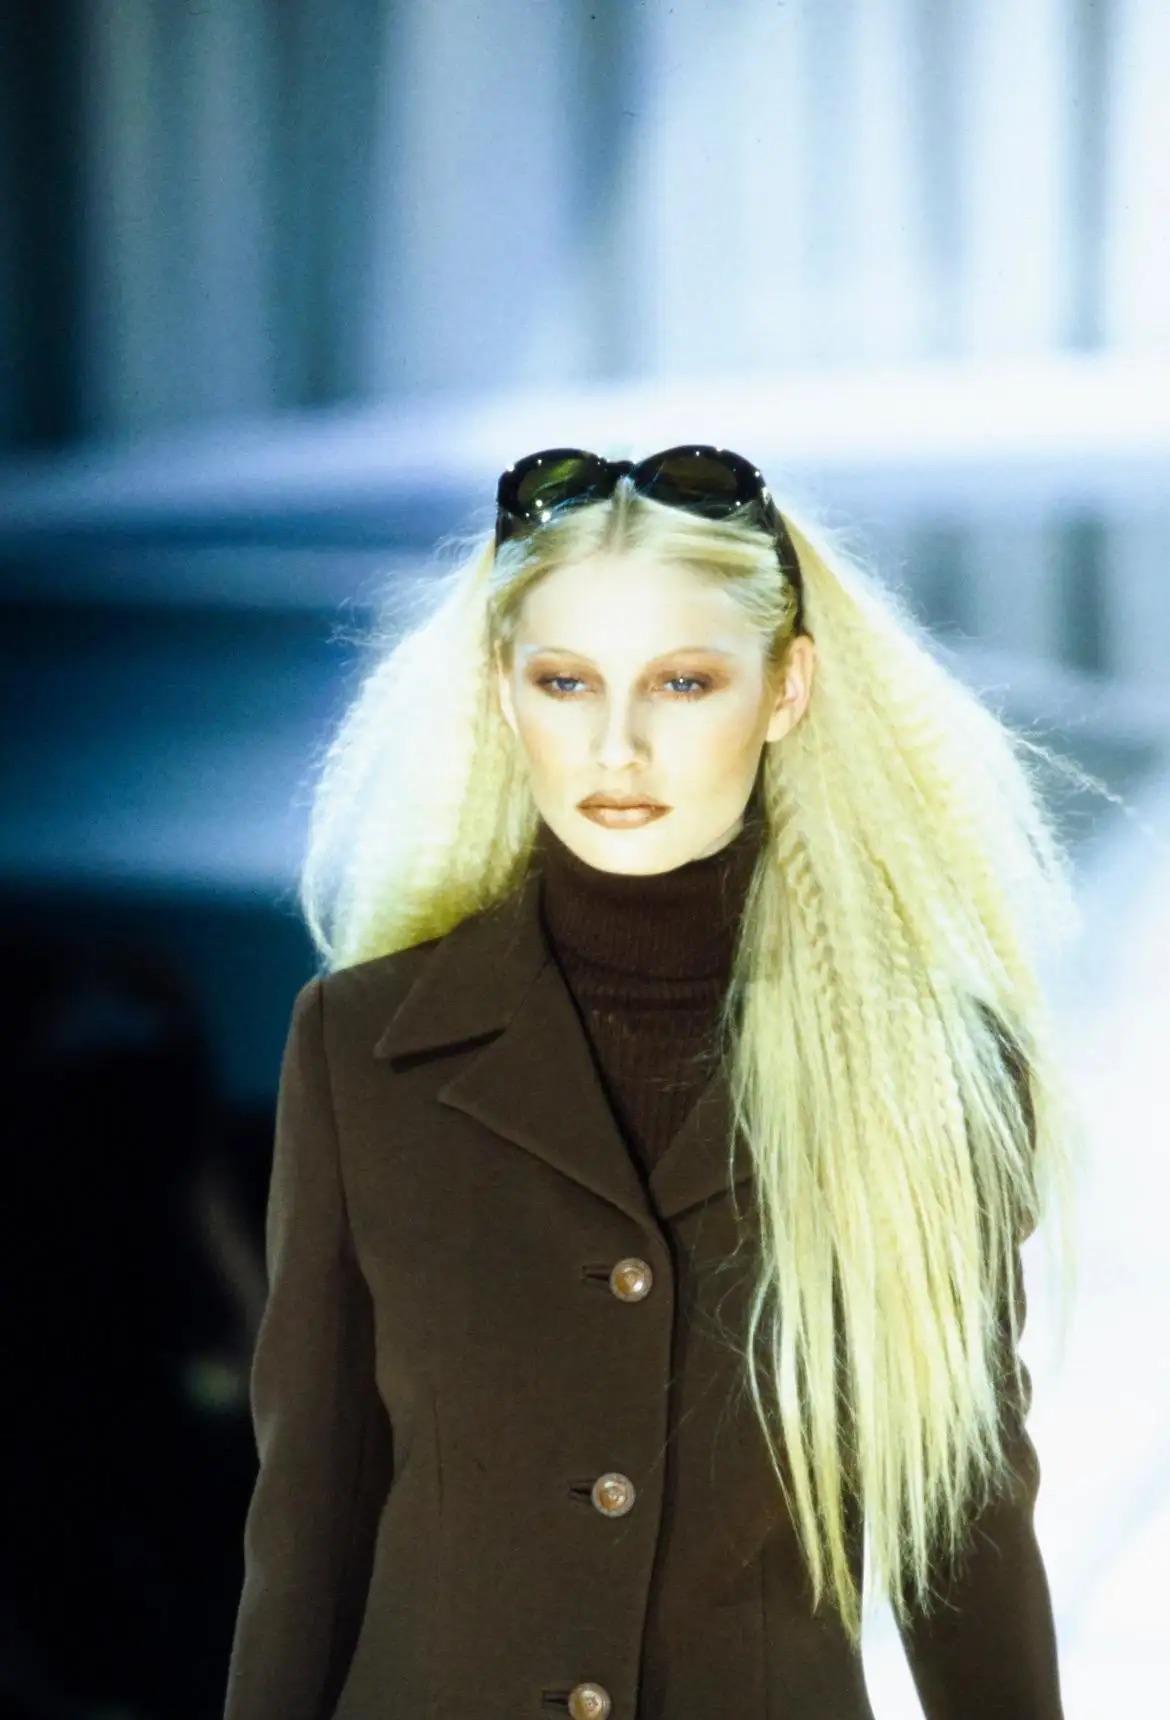 Nous vous présentons une paire de lunettes de soleil Gianni Versace accentuée de croc marron, conçue par Gianni Versace. Issues de la collection automne-hiver 1996, ces lunettes de soleil ont fait leur apparition dans le look 8 de Kirsty Hume, et